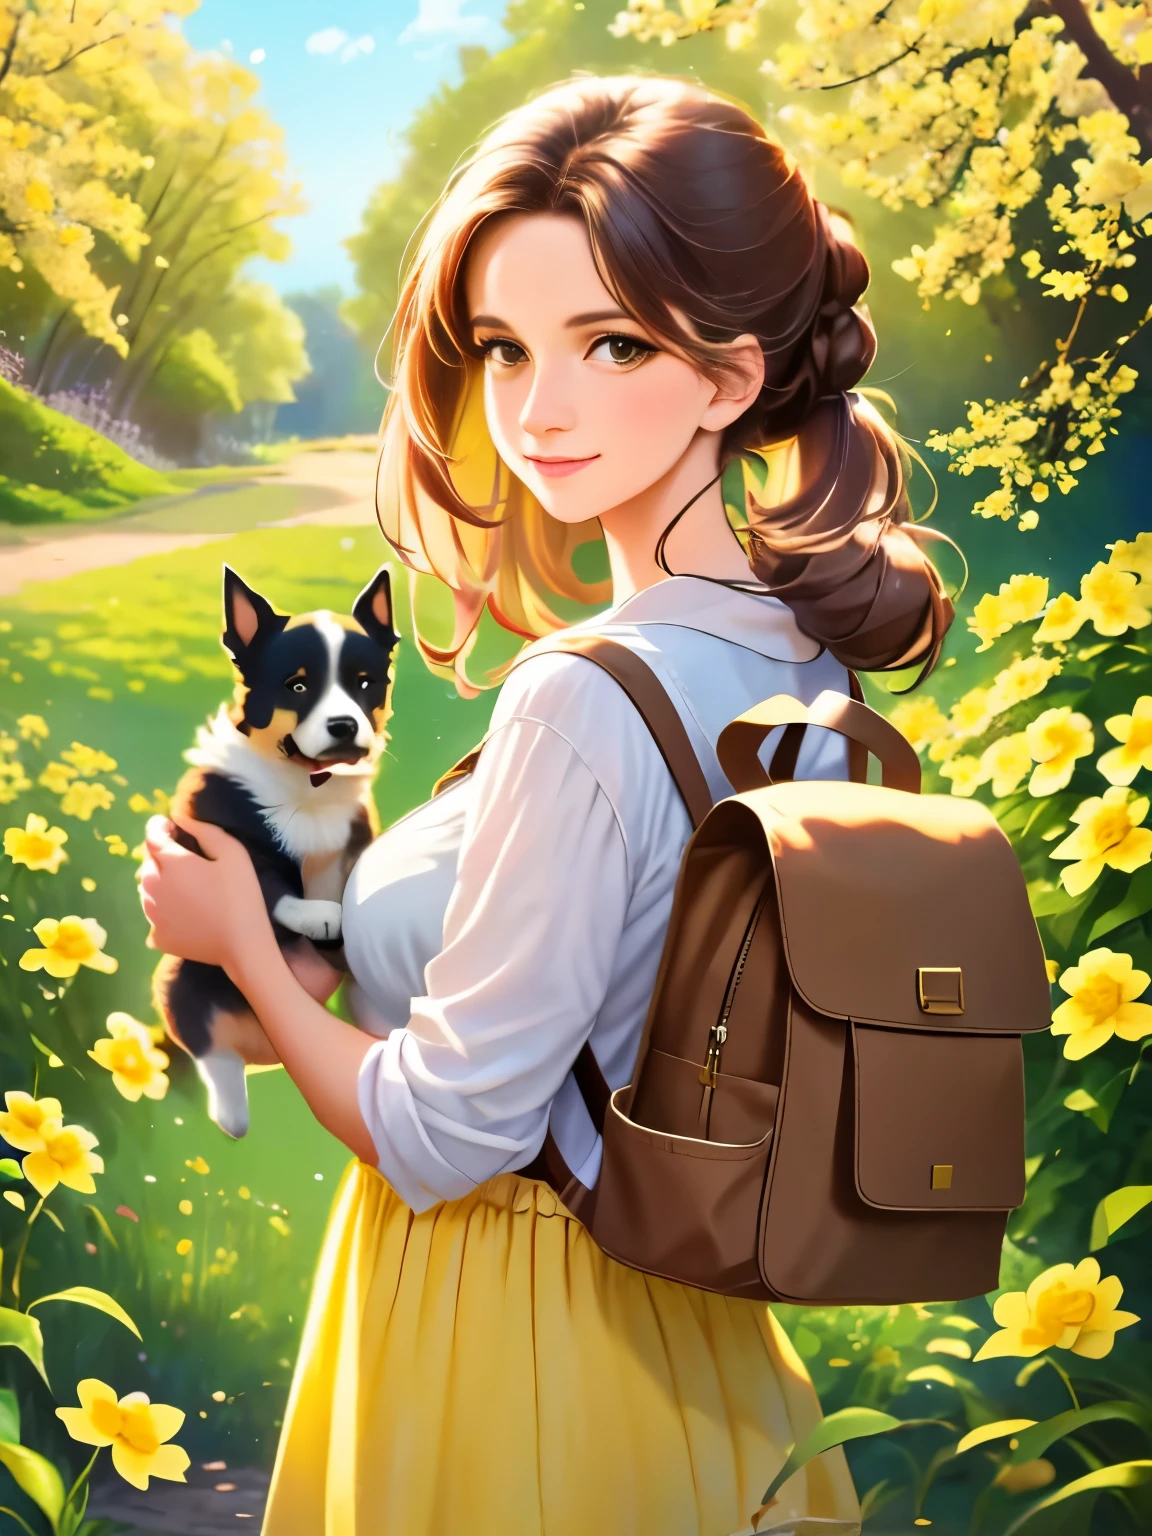 提示: 一個非常迷人的背包和她可愛的小狗享受著美麗的黃色花朵和大自然包圍的可愛的春遊. 该插图为4k分辨率的高清插图, 具有高度細緻的臉部特徵和卡通風格的視覺效果.  